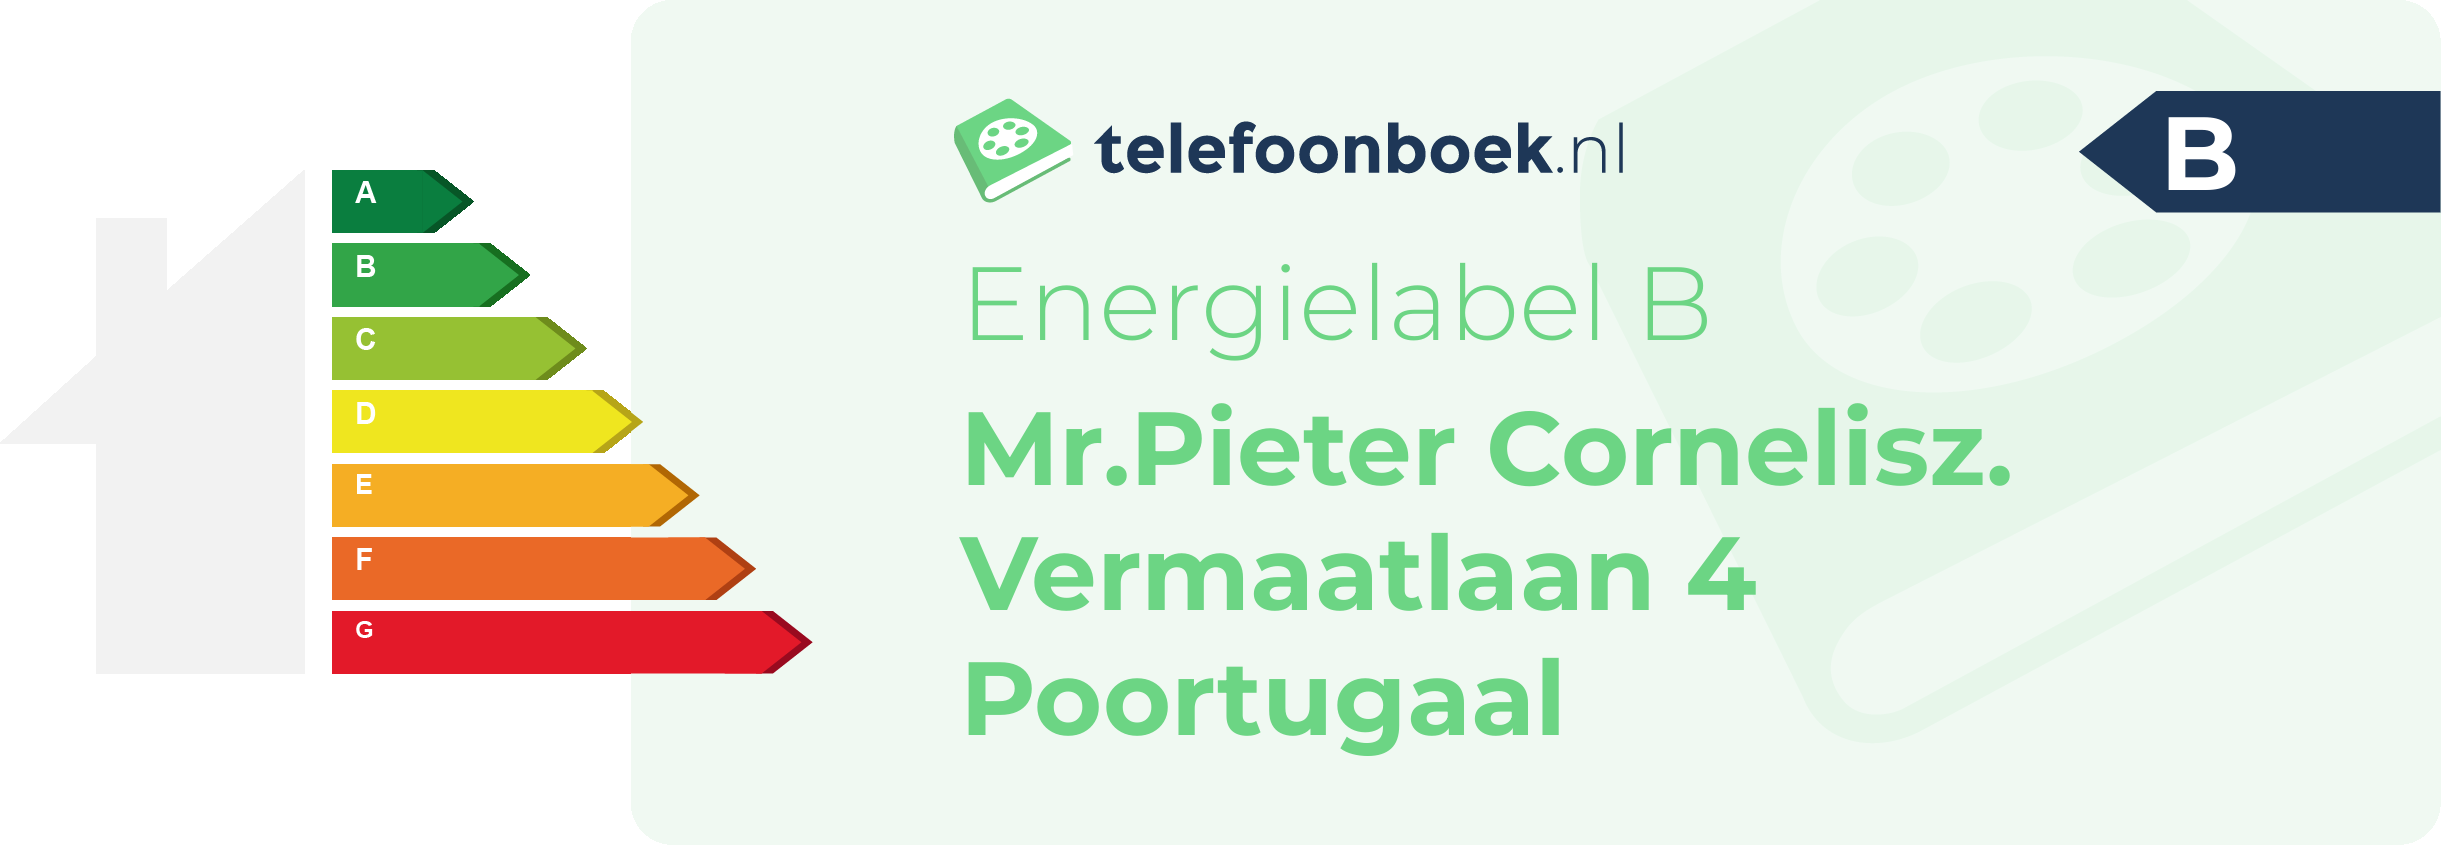 Energielabel Mr.Pieter Cornelisz. Vermaatlaan 4 Poortugaal